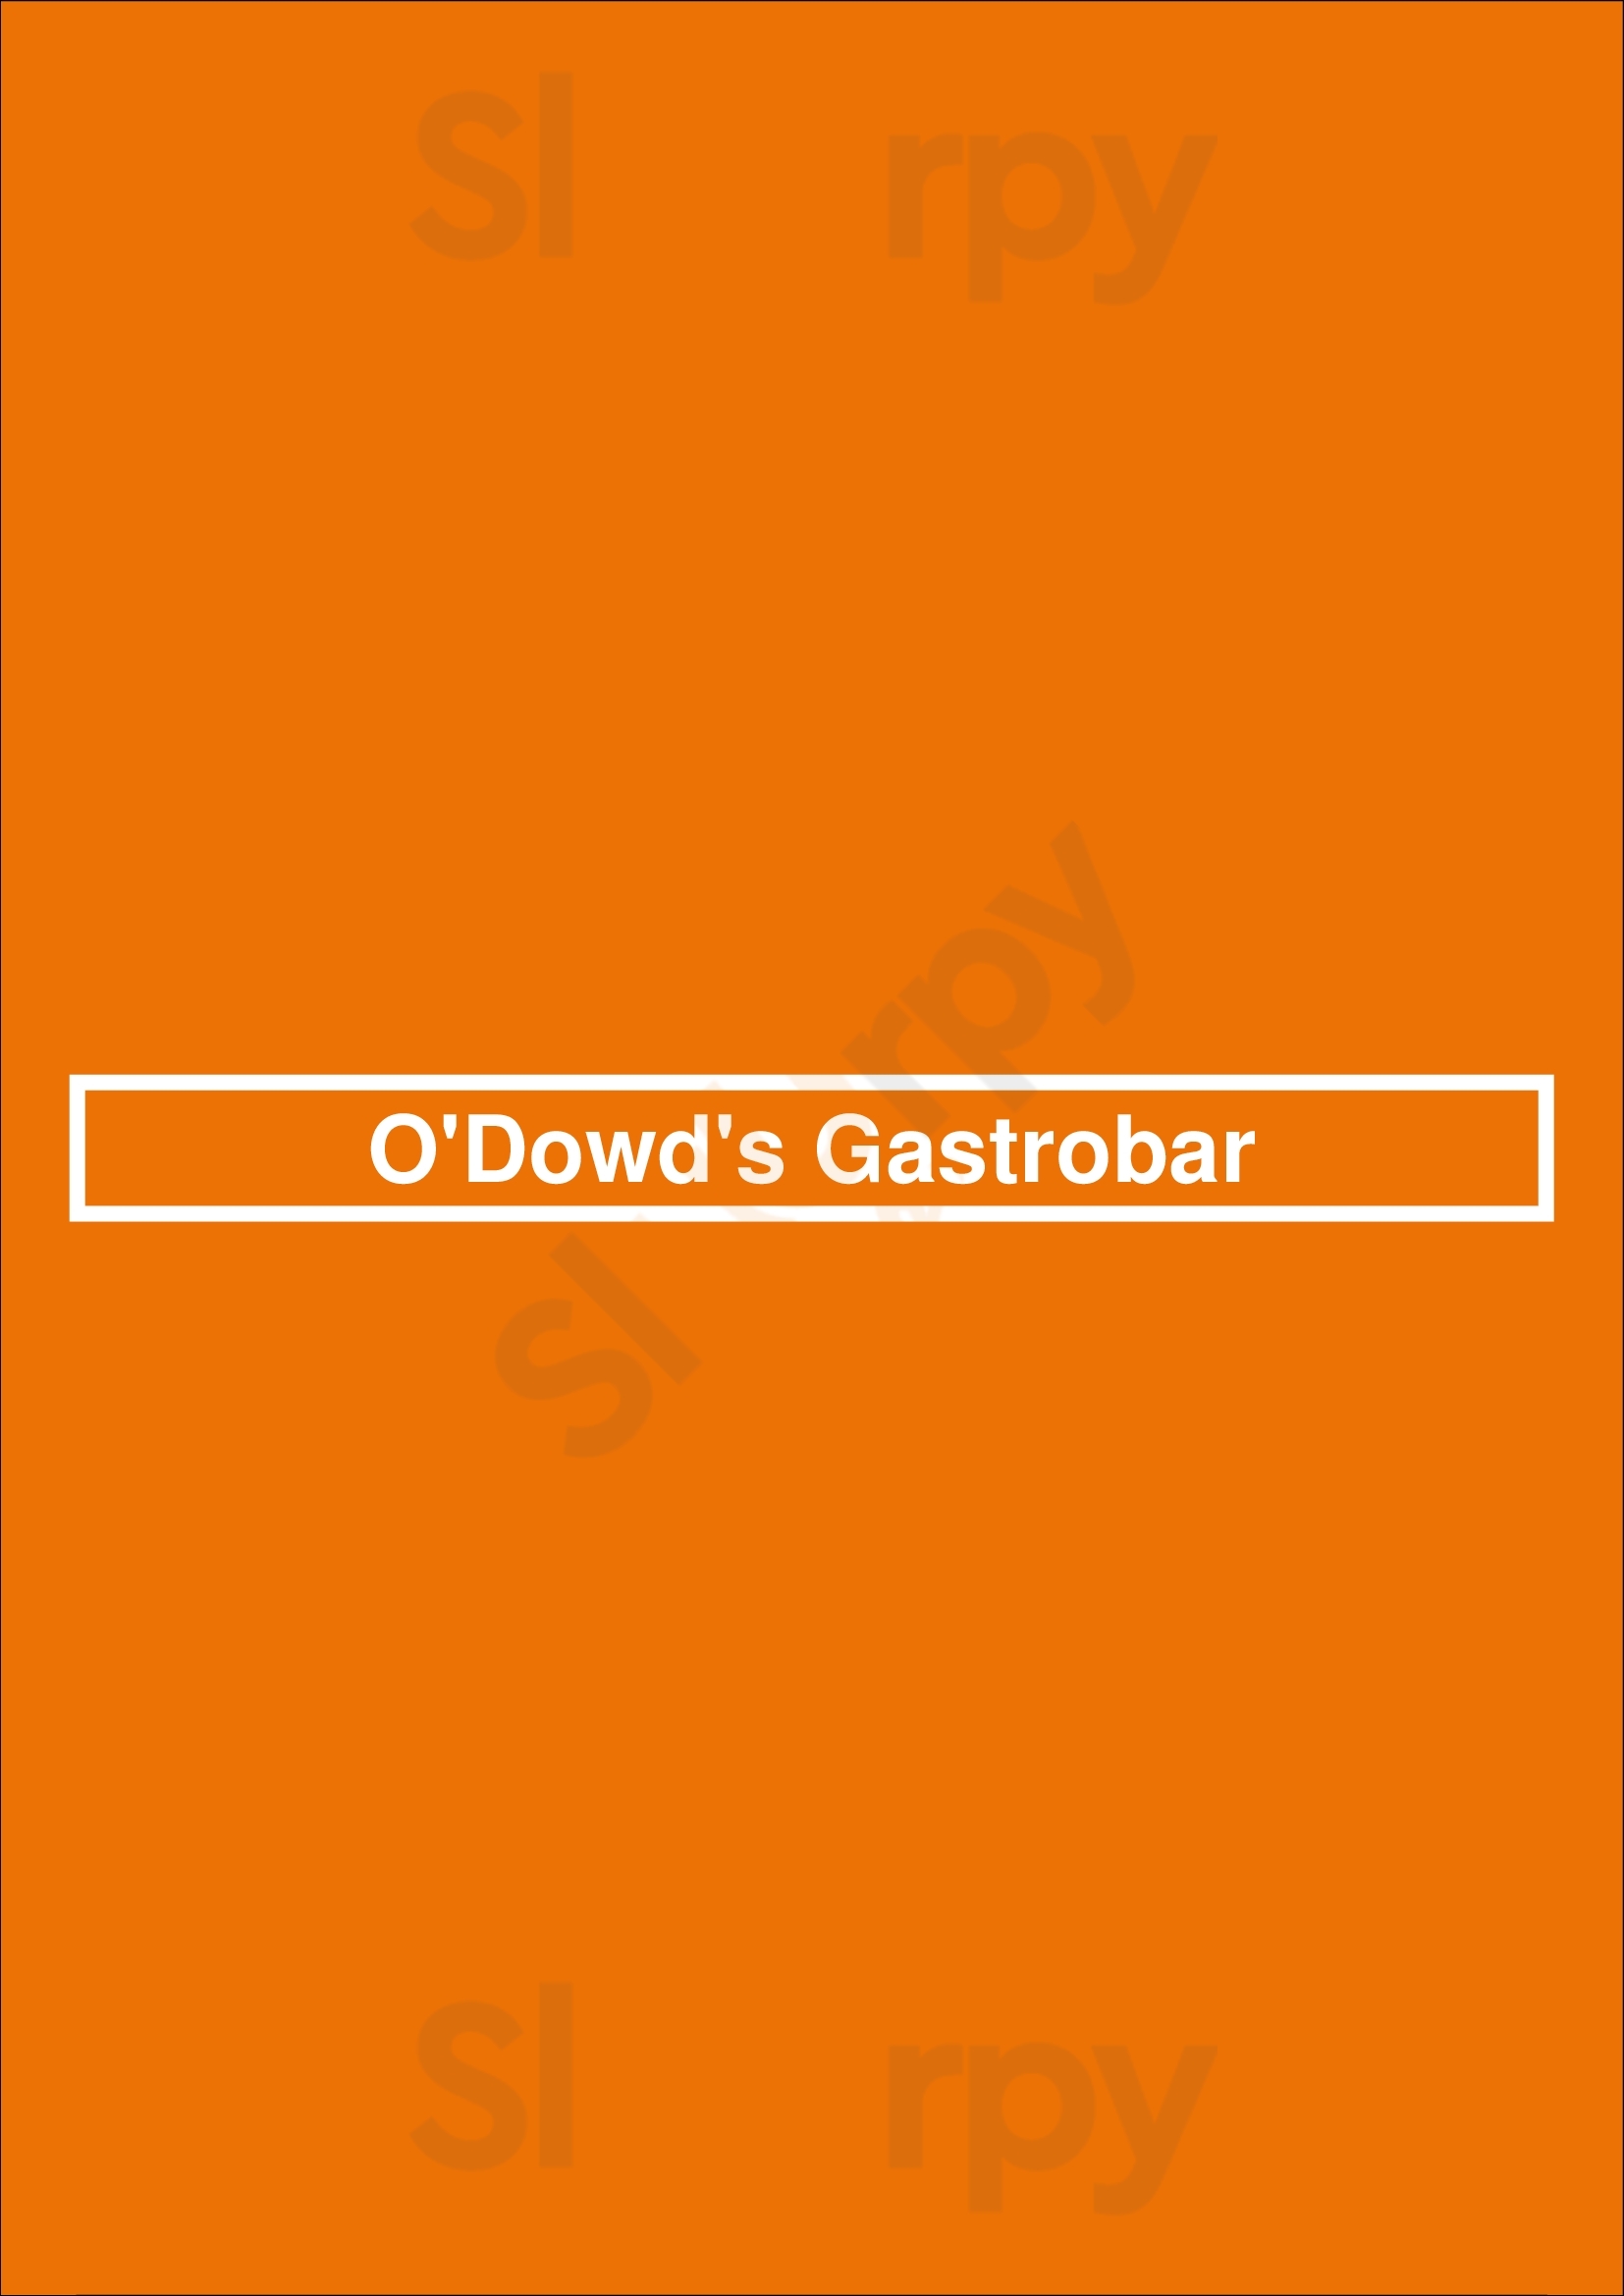 O'dowd's Gastrobar Kansas City Menu - 1